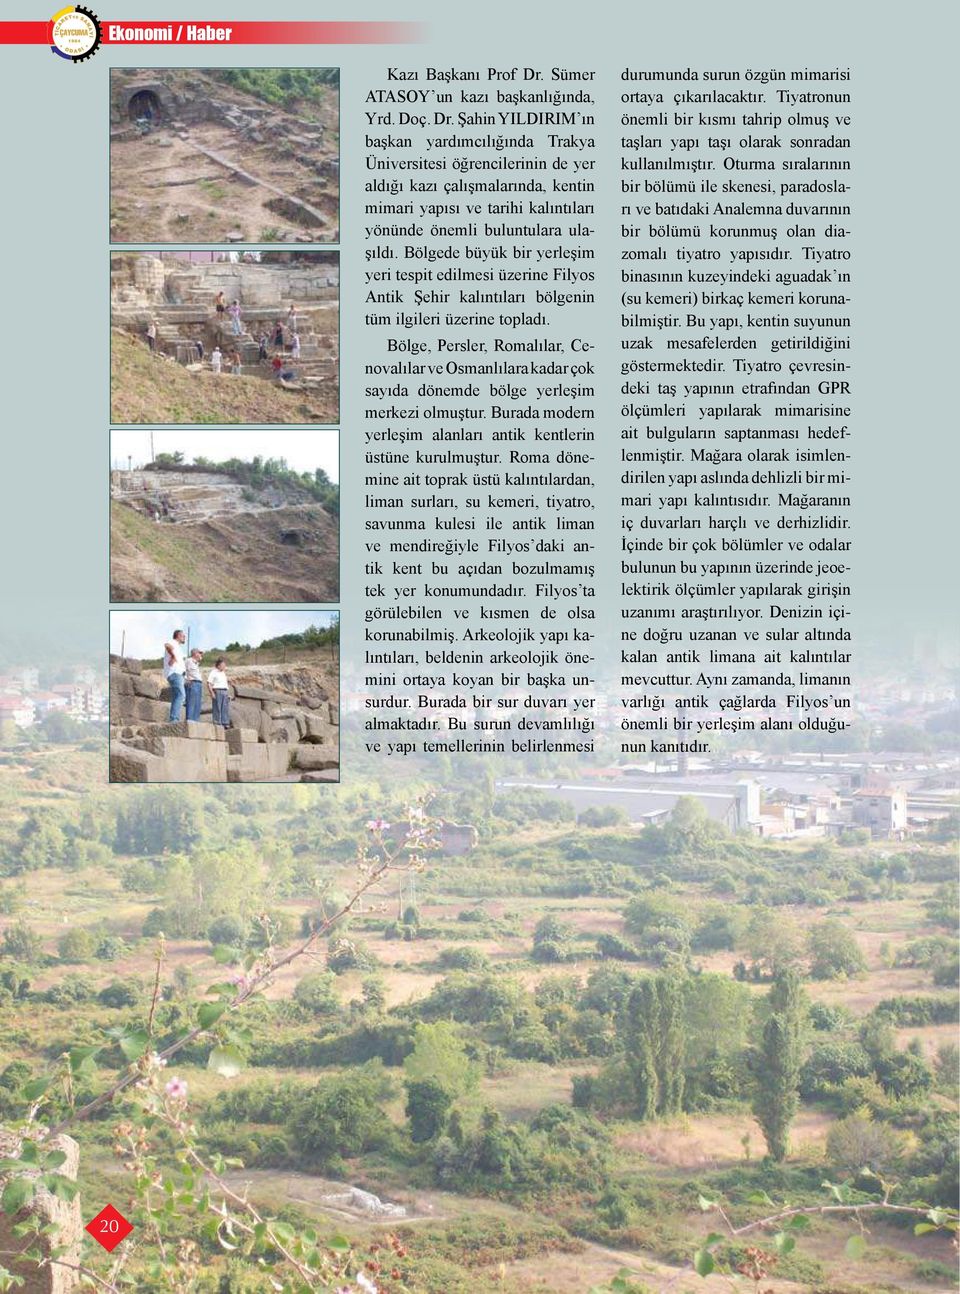 Şahin YILDIRIM ın başkan yardımcılığında Trakya Üniversitesi öğrencilerinin de yer aldığı kazı çalışmalarında, kentin mimari yapısı ve tarihi kalıntıları yönünde önemli buluntulara ulaşıldı.